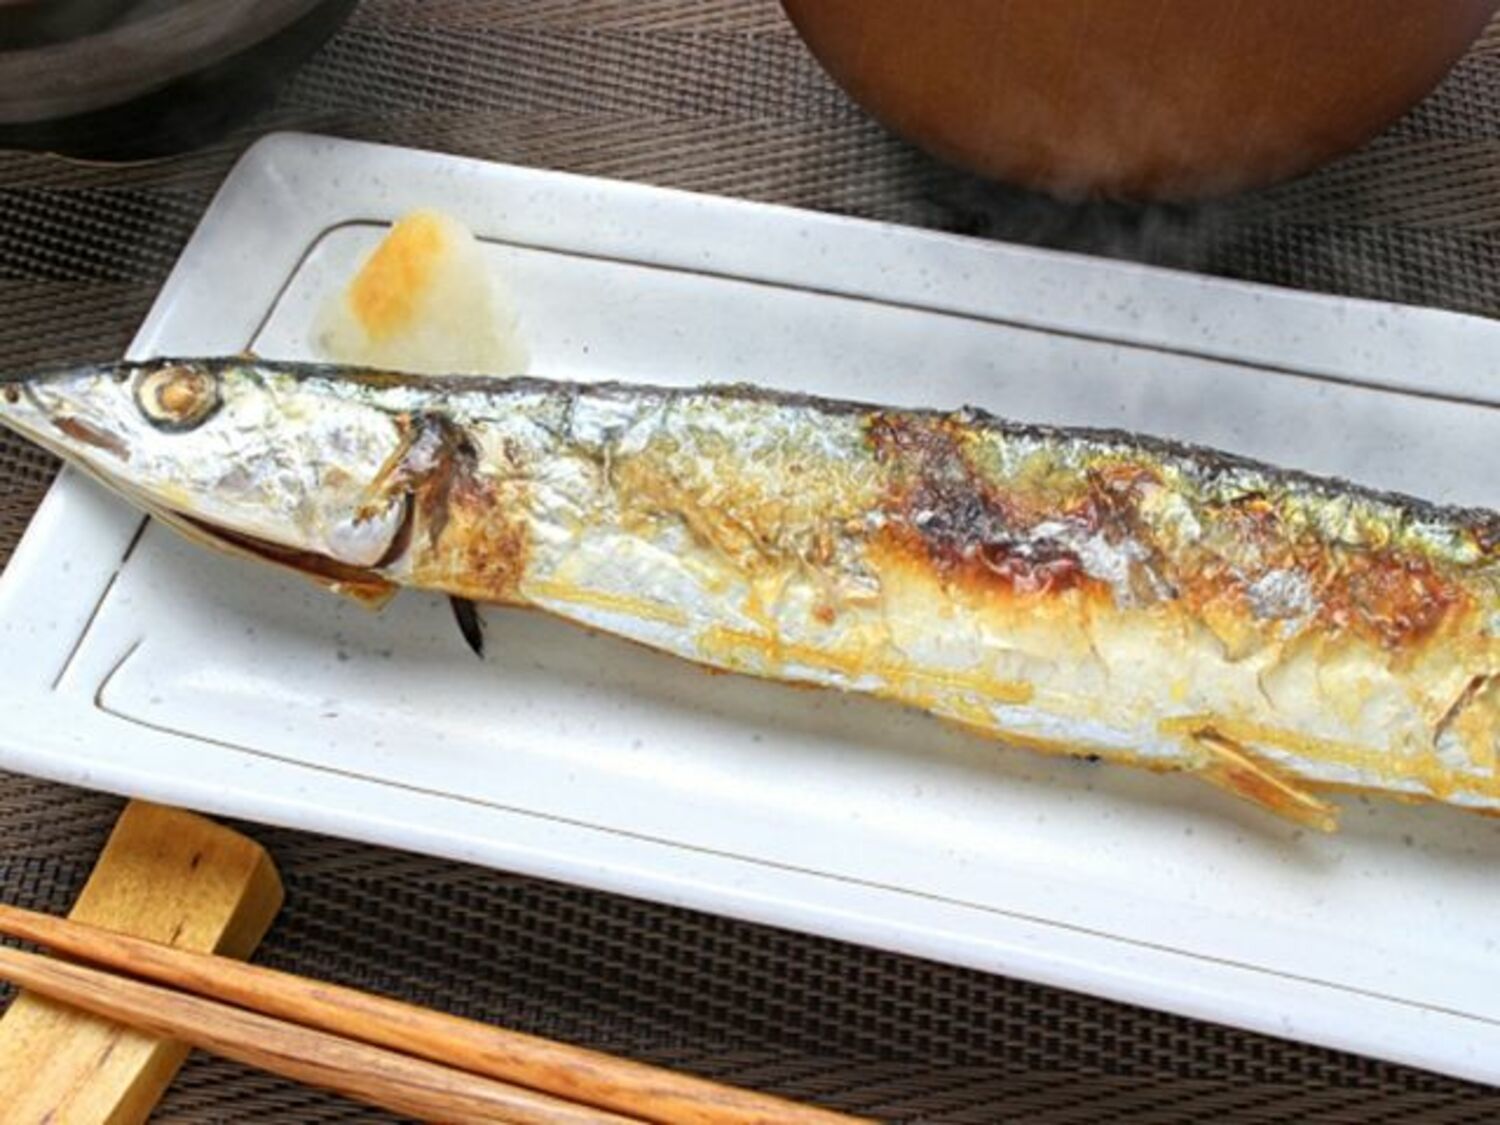 サンマ、マグロ、イカ…「庶民の魚」が日本の食卓からなくなる!?の画像